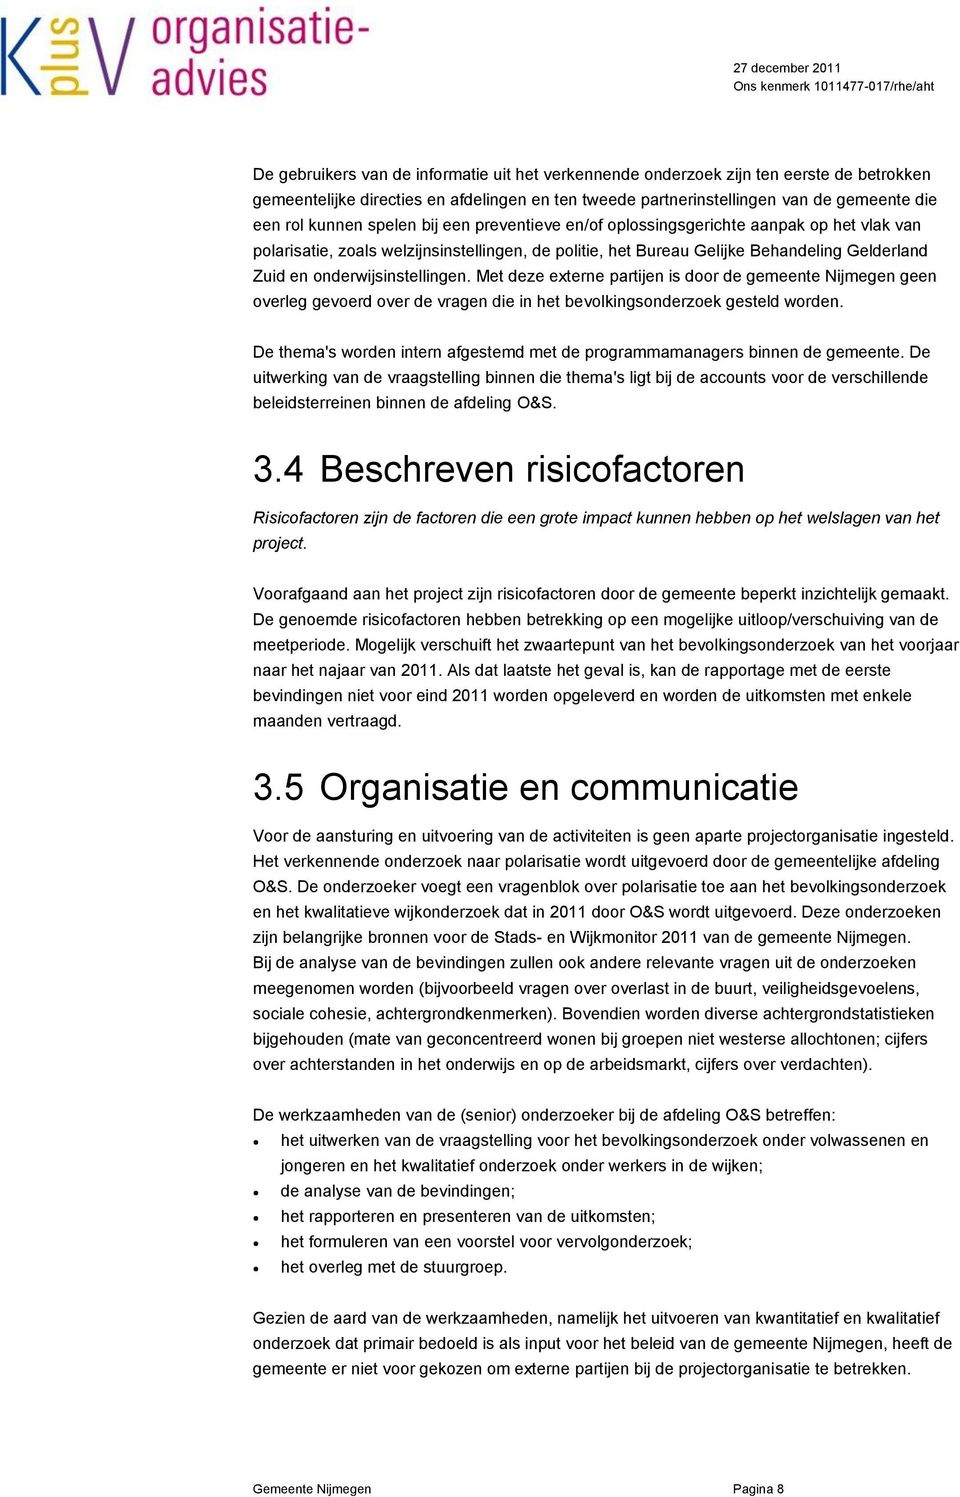 Met deze externe partijen is door de gemeente Nijmegen geen overleg gevoerd over de vragen die in het bevolkingsonderzoek gesteld worden.